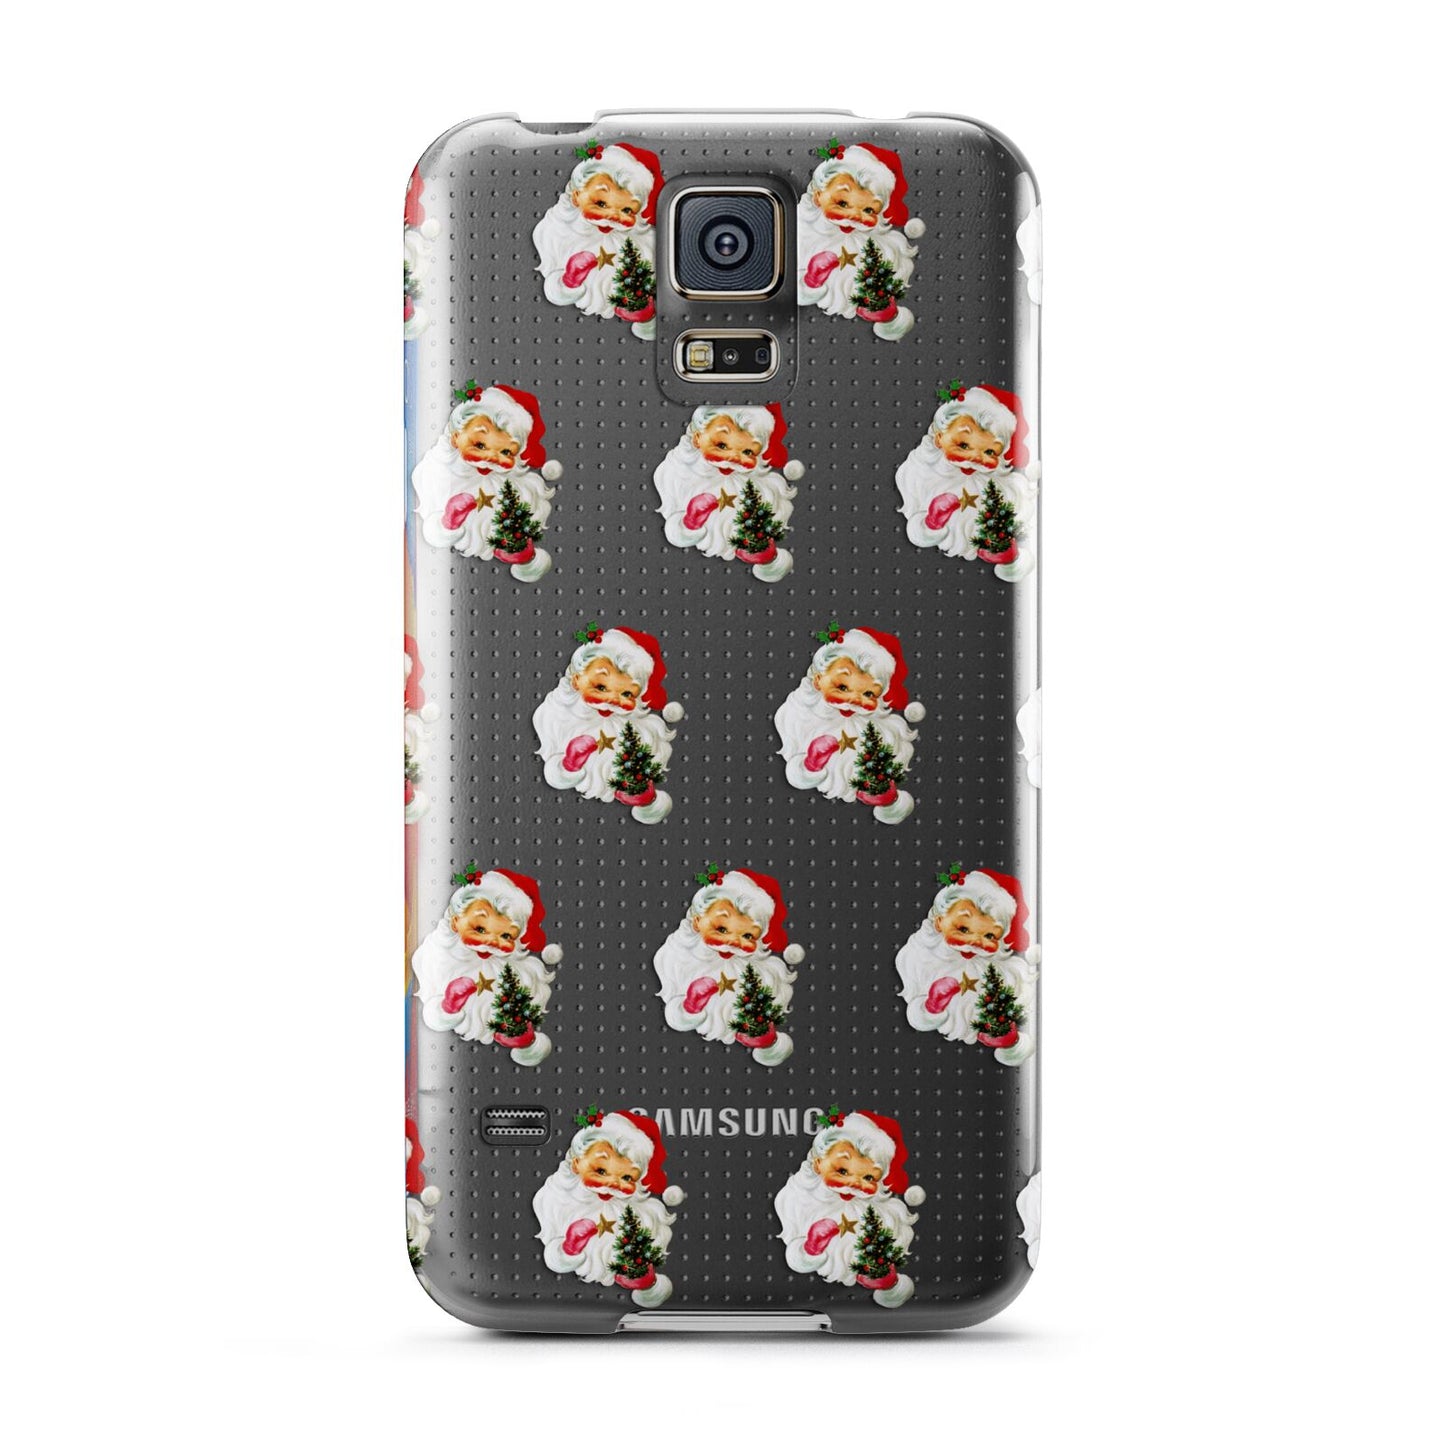 Retro Santa Face Samsung Galaxy S5 Case